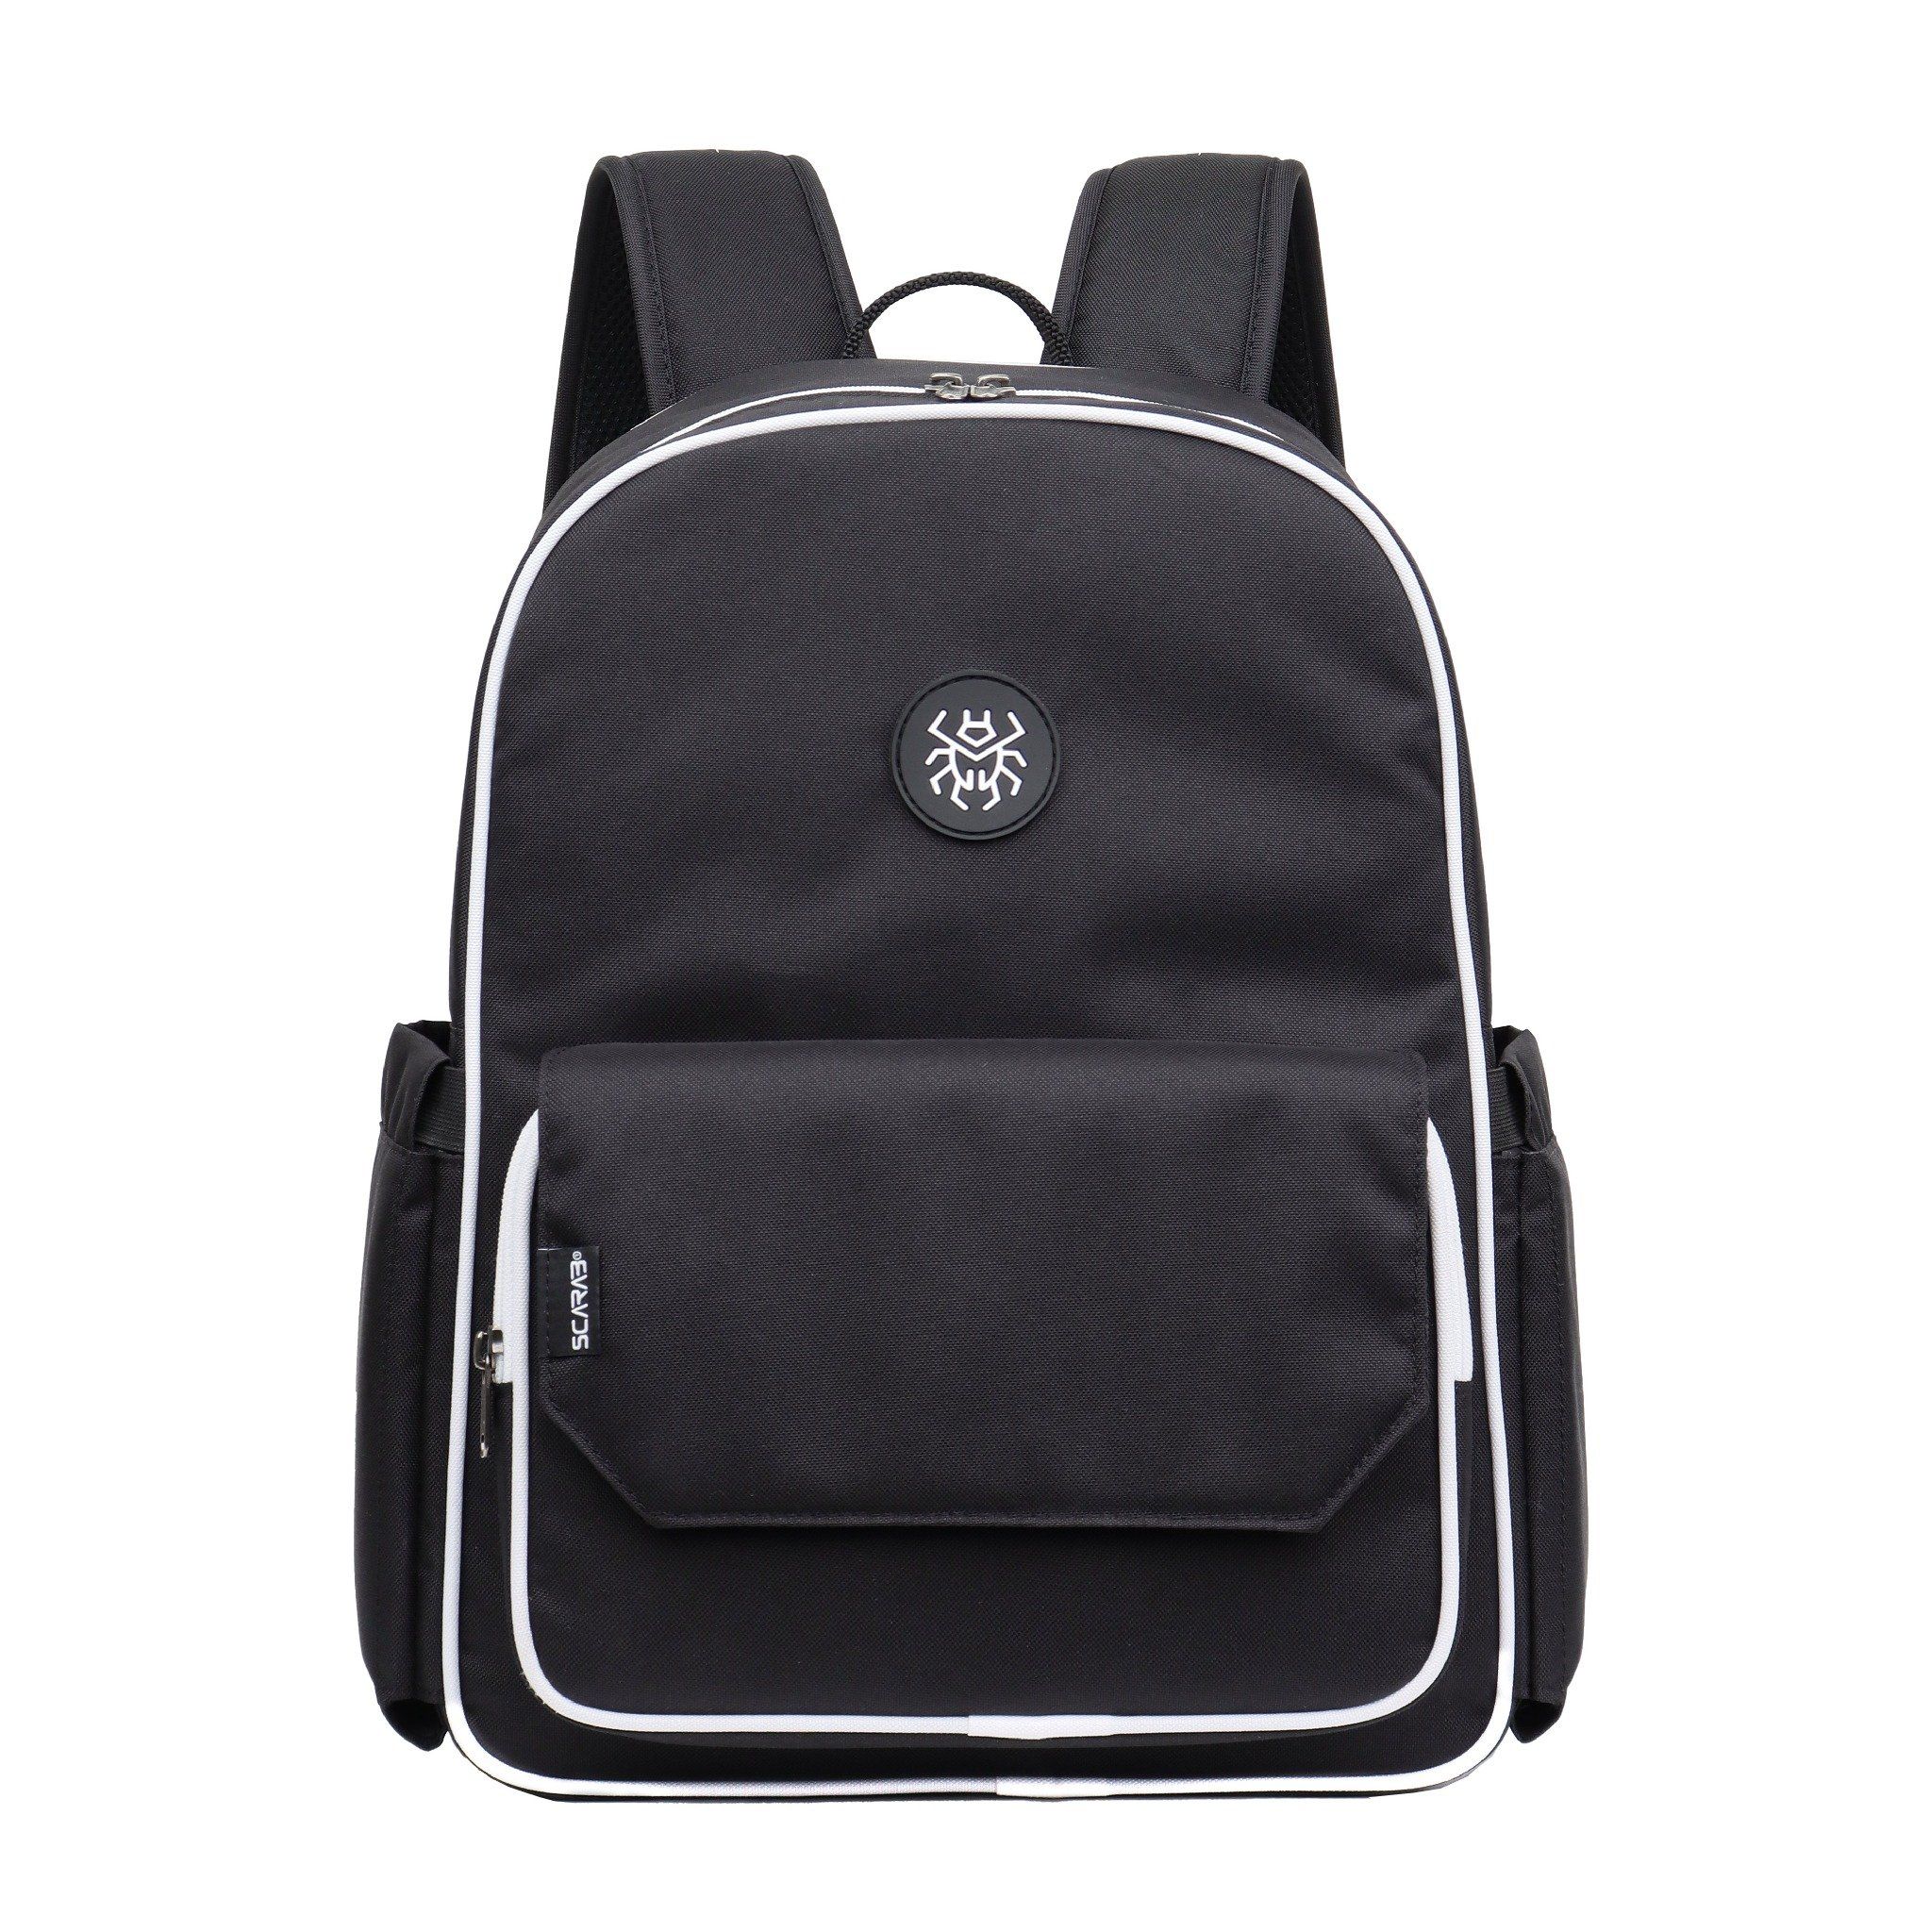  Daypack Backpack - Black White 